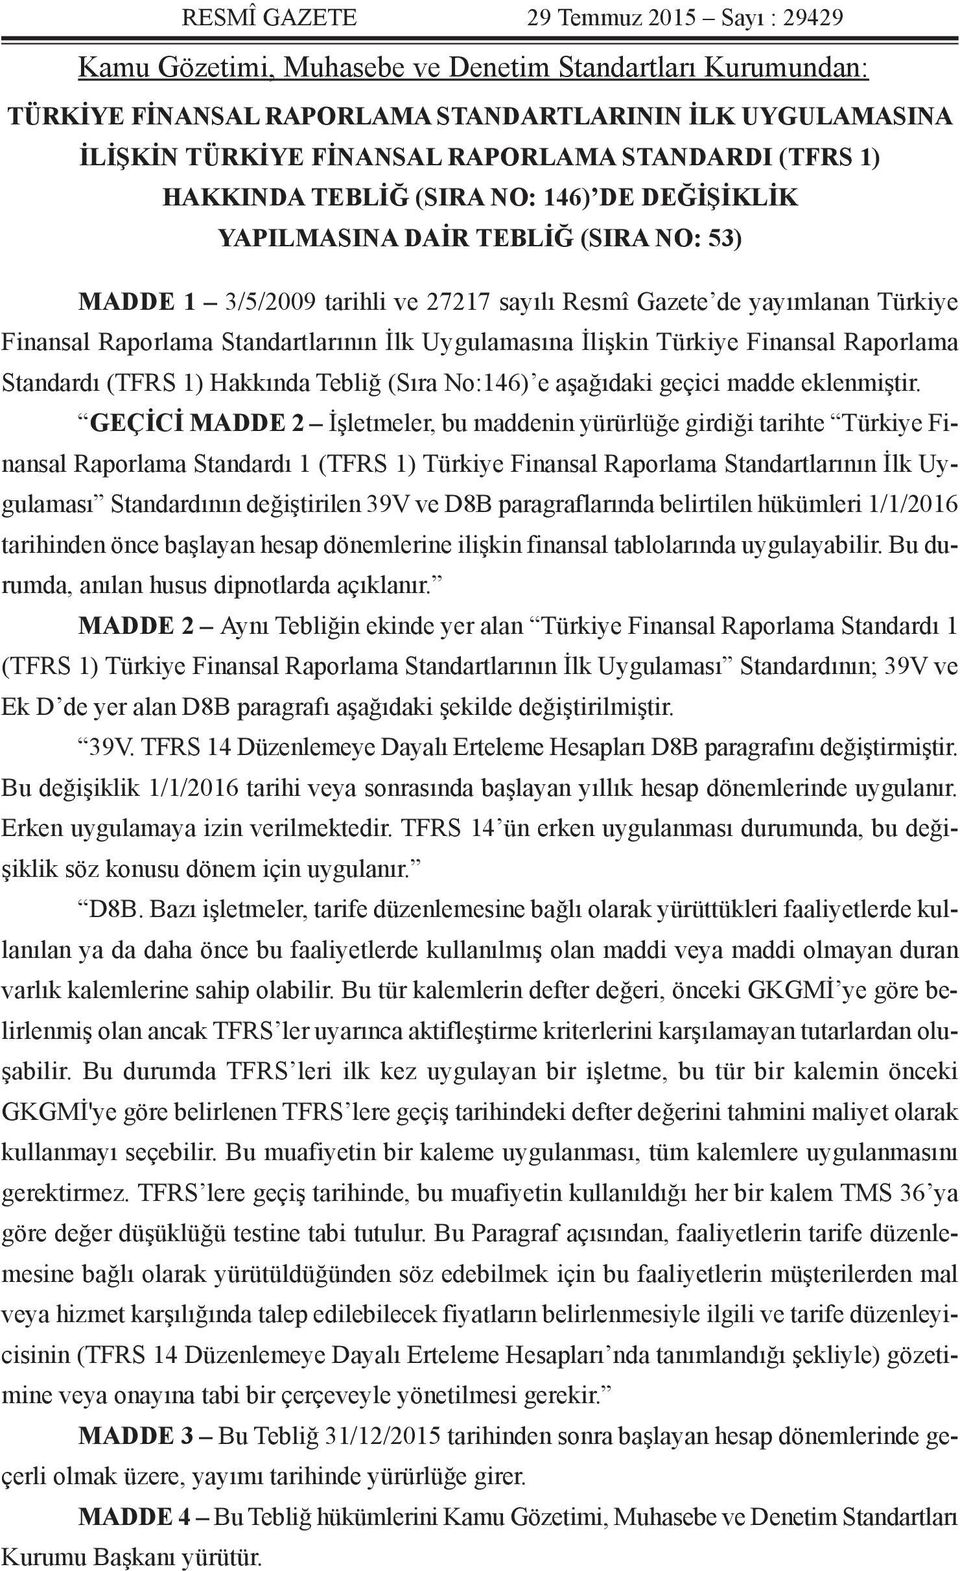 Standartlarının İlk Uygulamasına İlişkin Türkiye Finansal Raporlama Standardı (TFRS 1) Hakkında Tebliğ (Sıra No:146) e aşağıdaki geçici madde eklenmiştir.